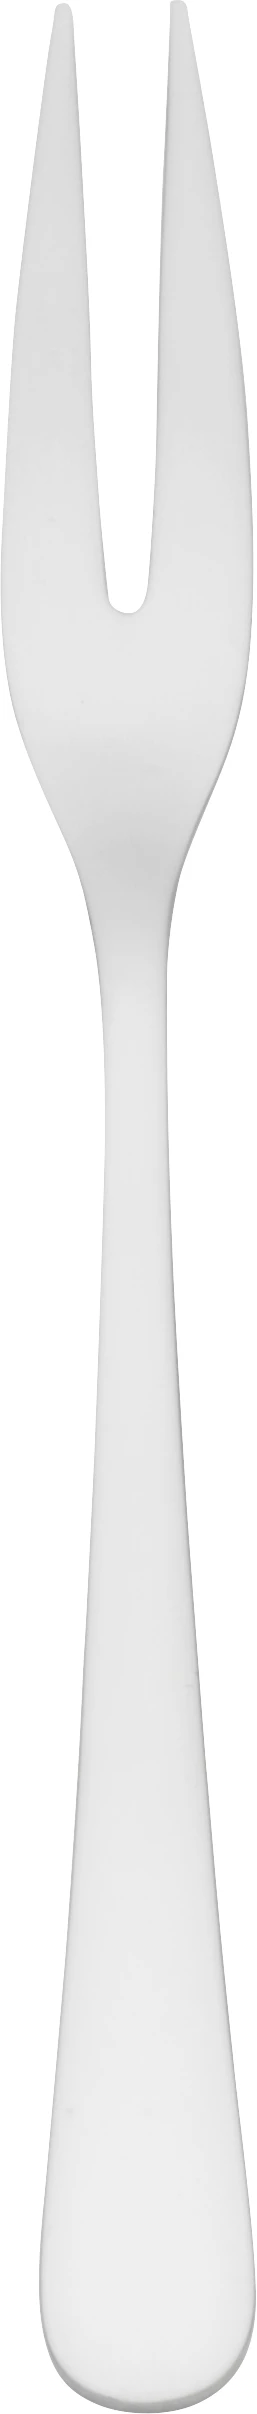 Classico pålægsgaffel, 16 cm